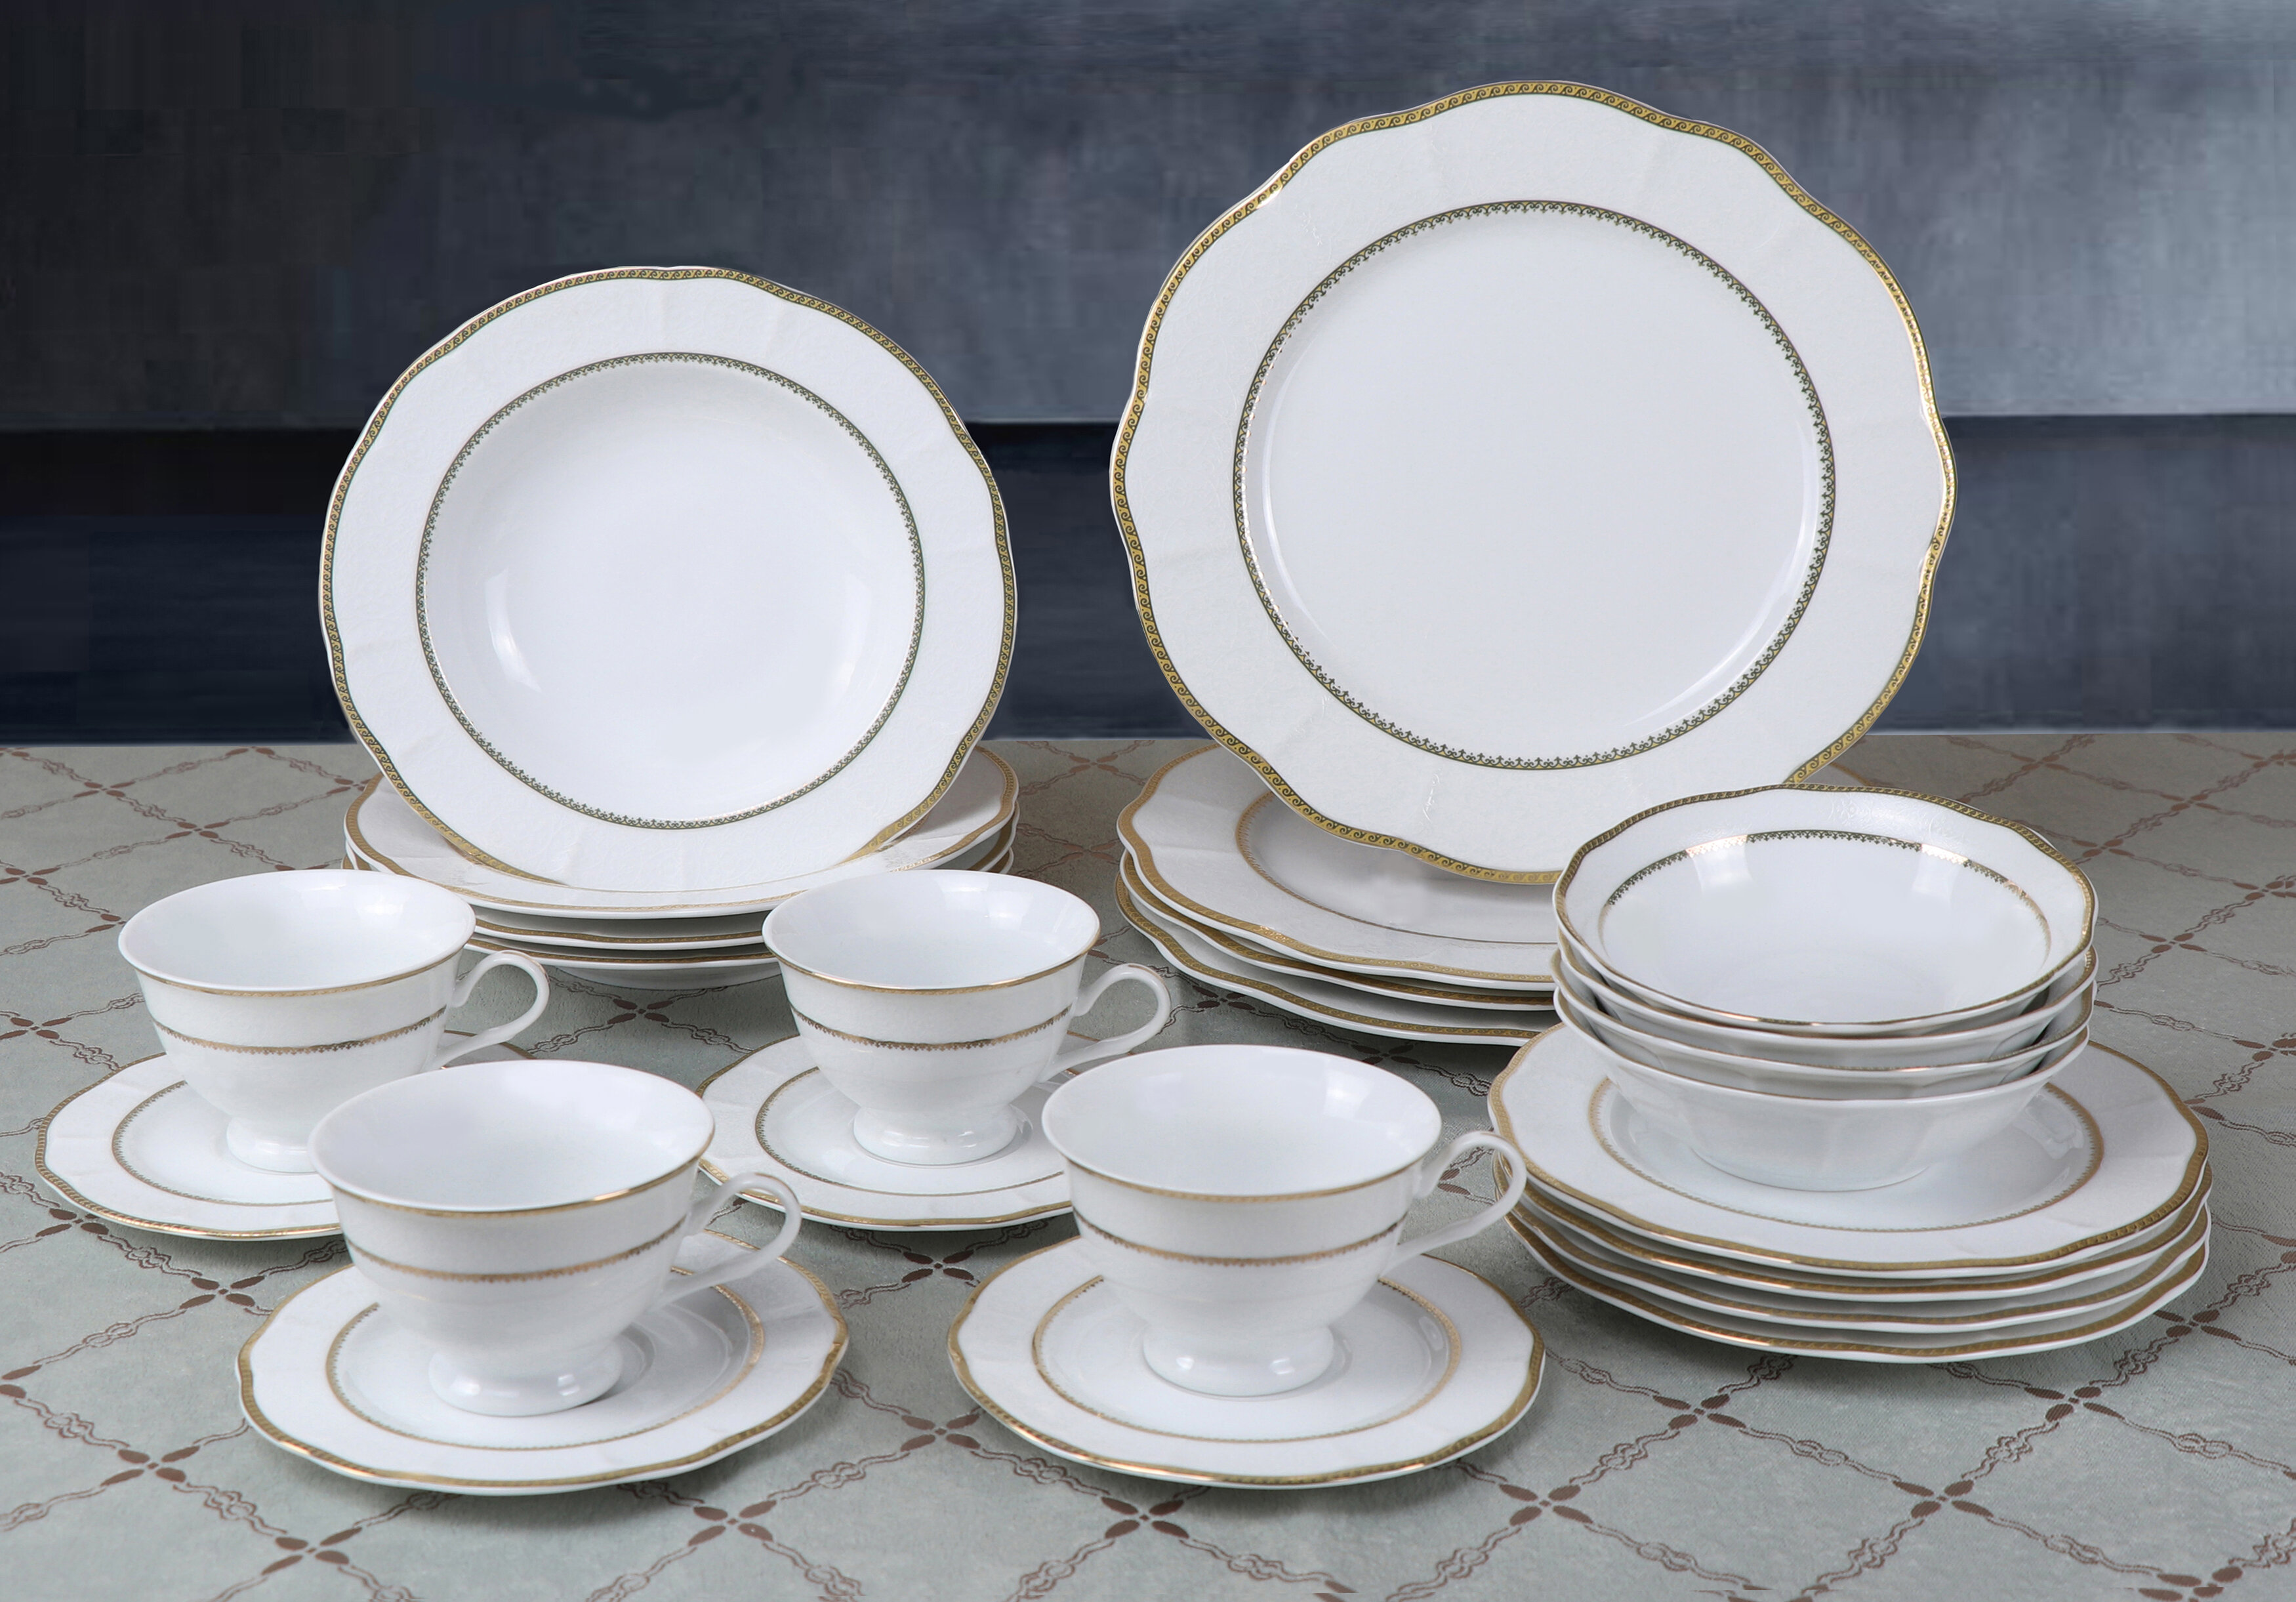 fine china dinnerware